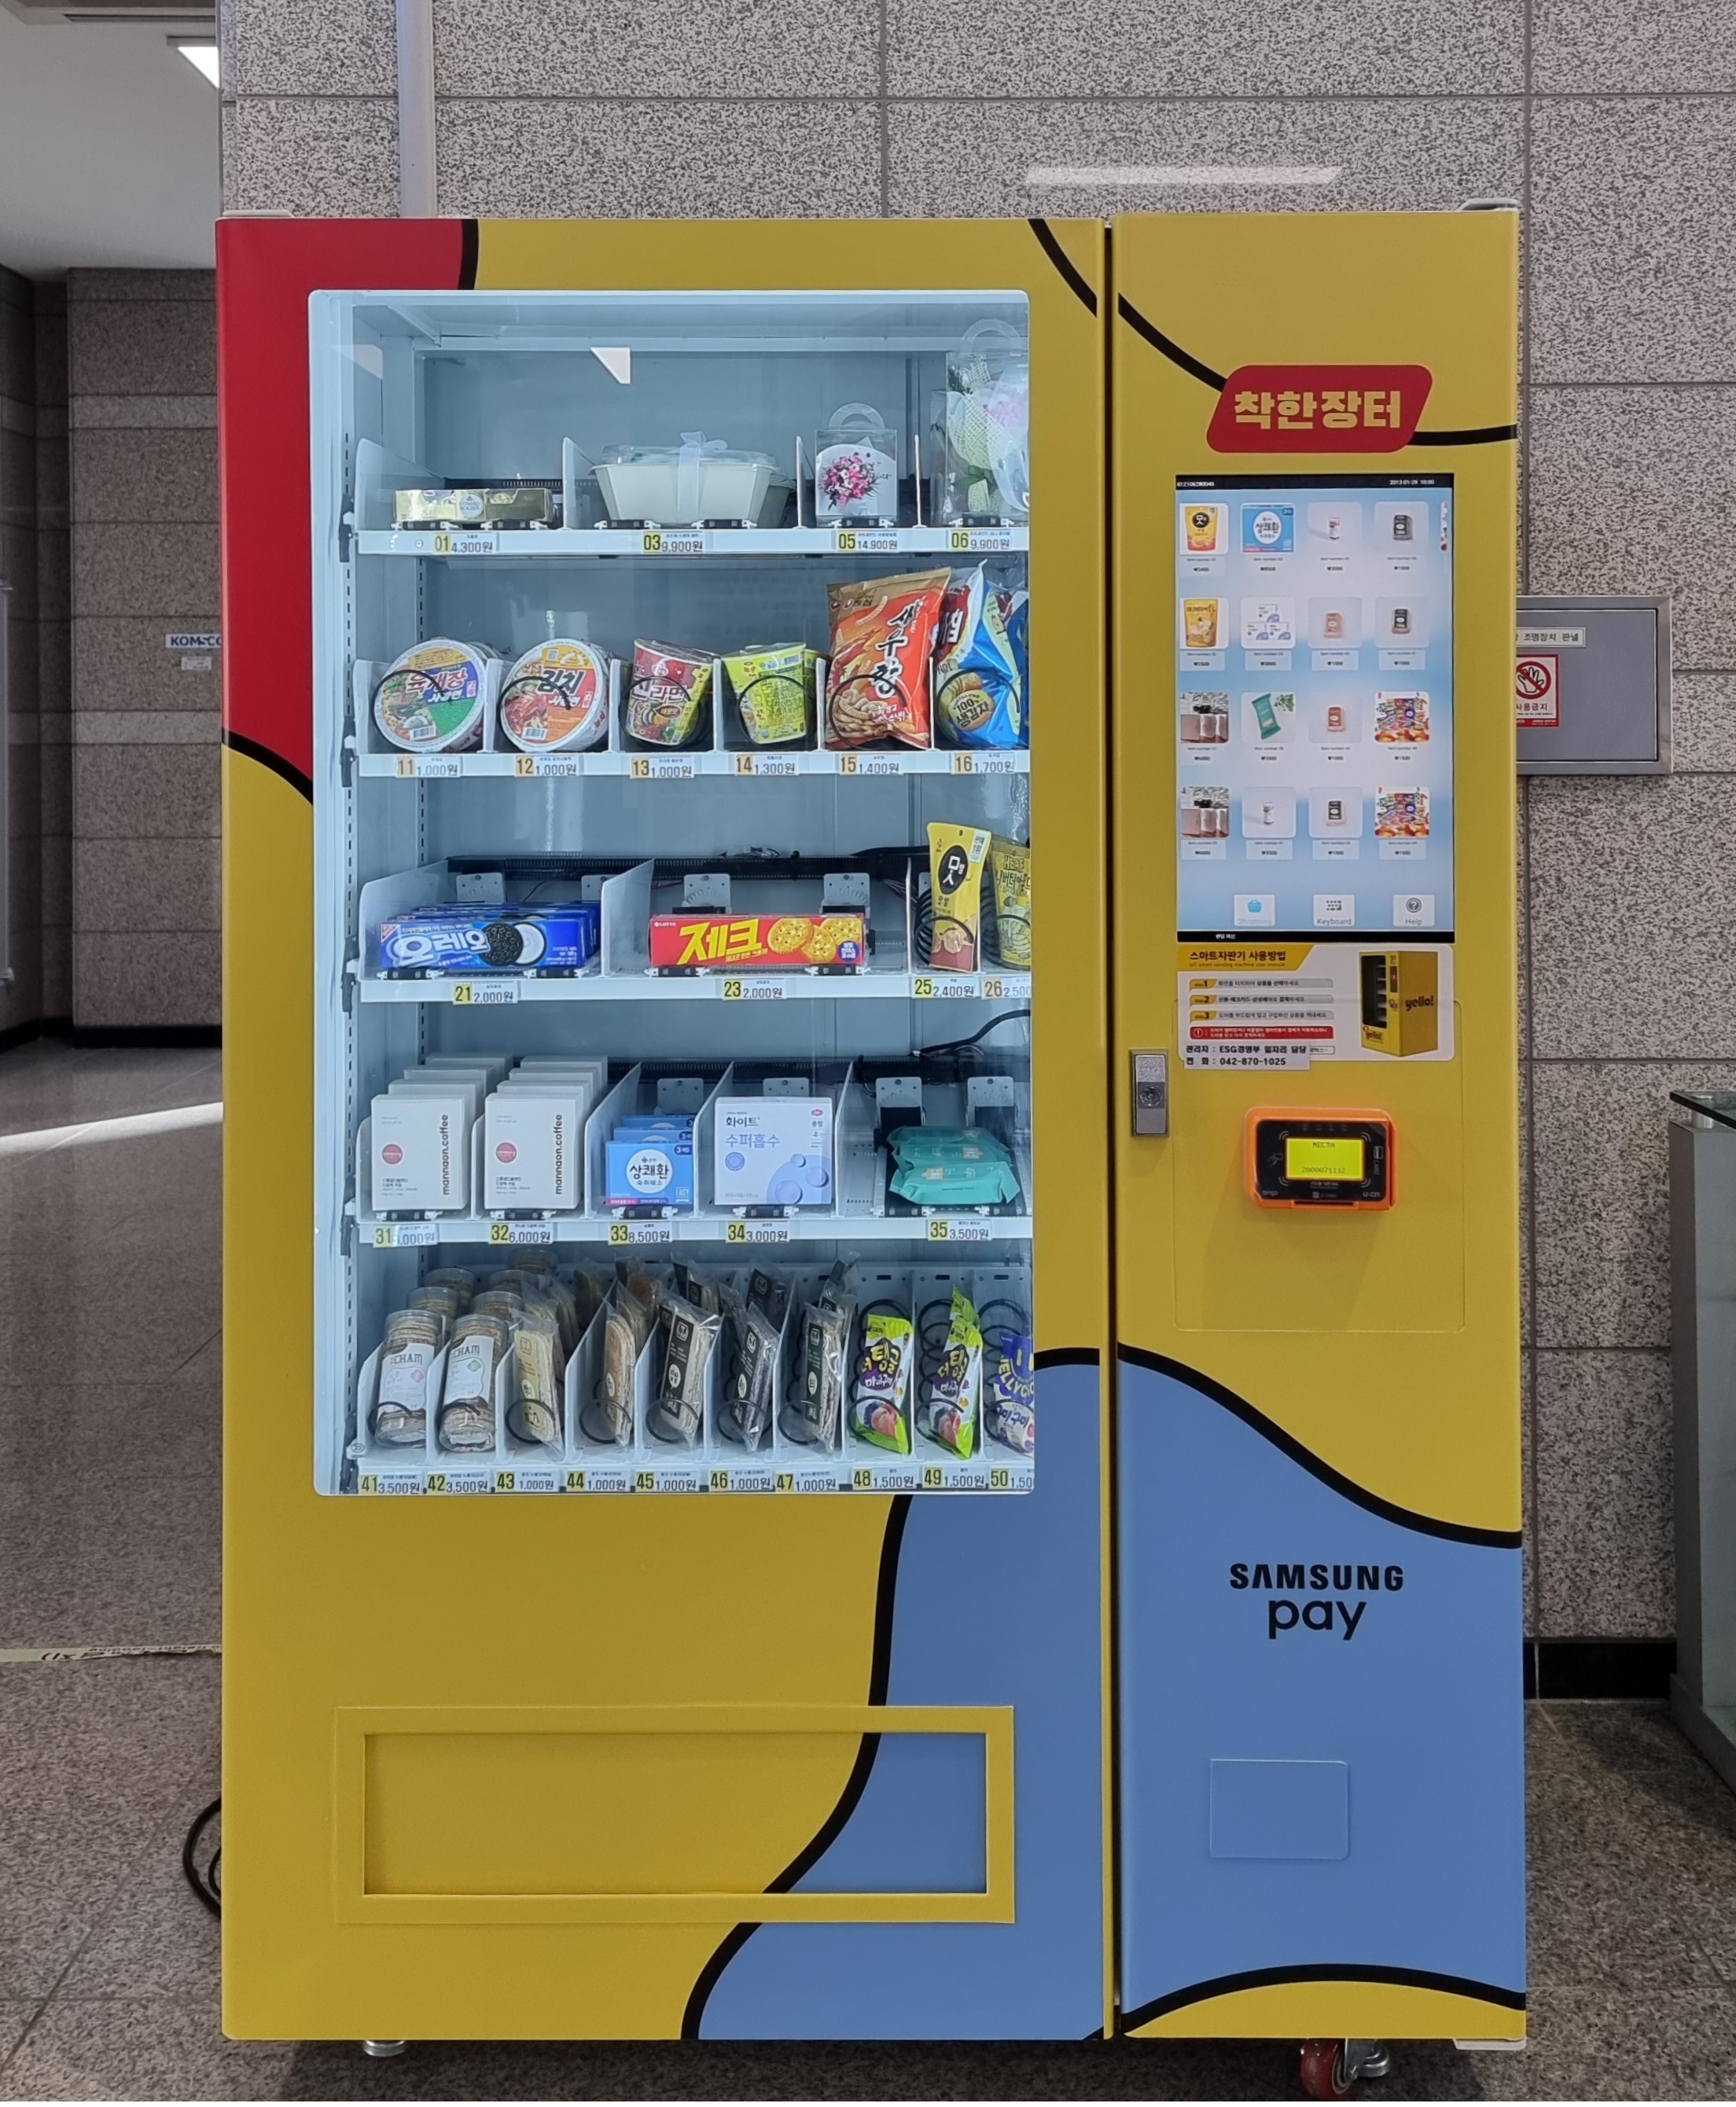 2. 행복나눔 자판기 설치사진